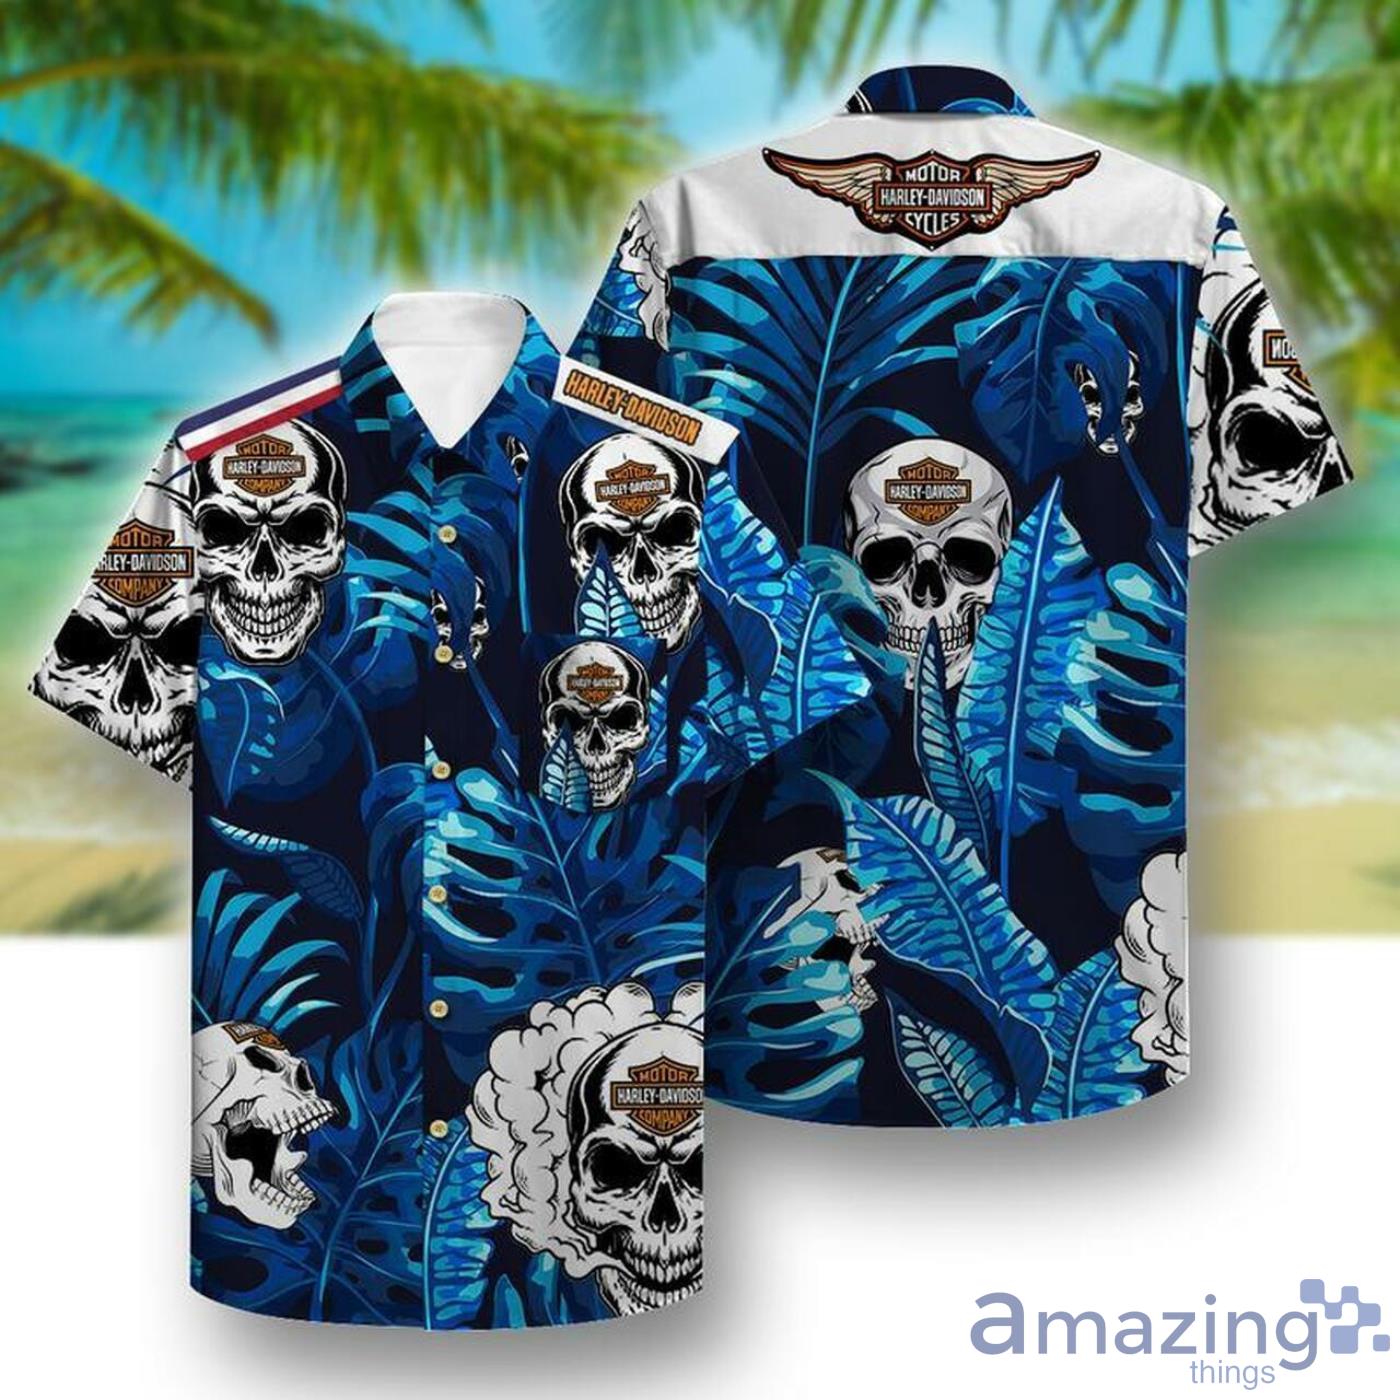 Harley Davidson Skull And Tropical Pattern Full Print Hawaiian Shirt Product Photo 1